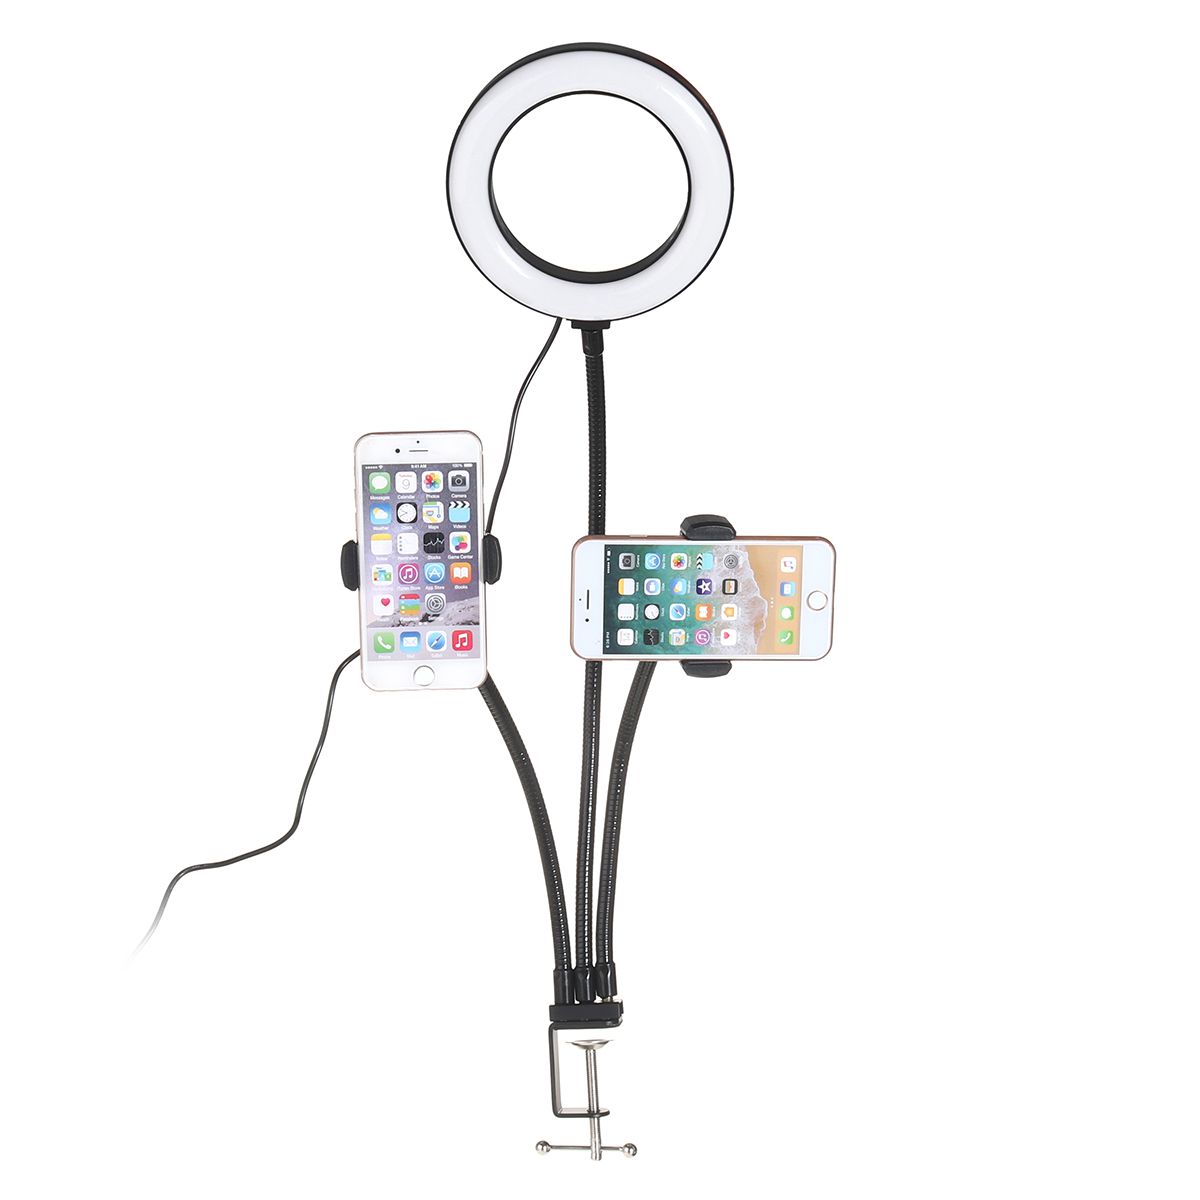 Universal-Selfie-Ring-Light-with-Flexible-Mobile-Phone-Holder-Lazy-Bracket-Desk-Lamp-LED-Light-for-L-1749829